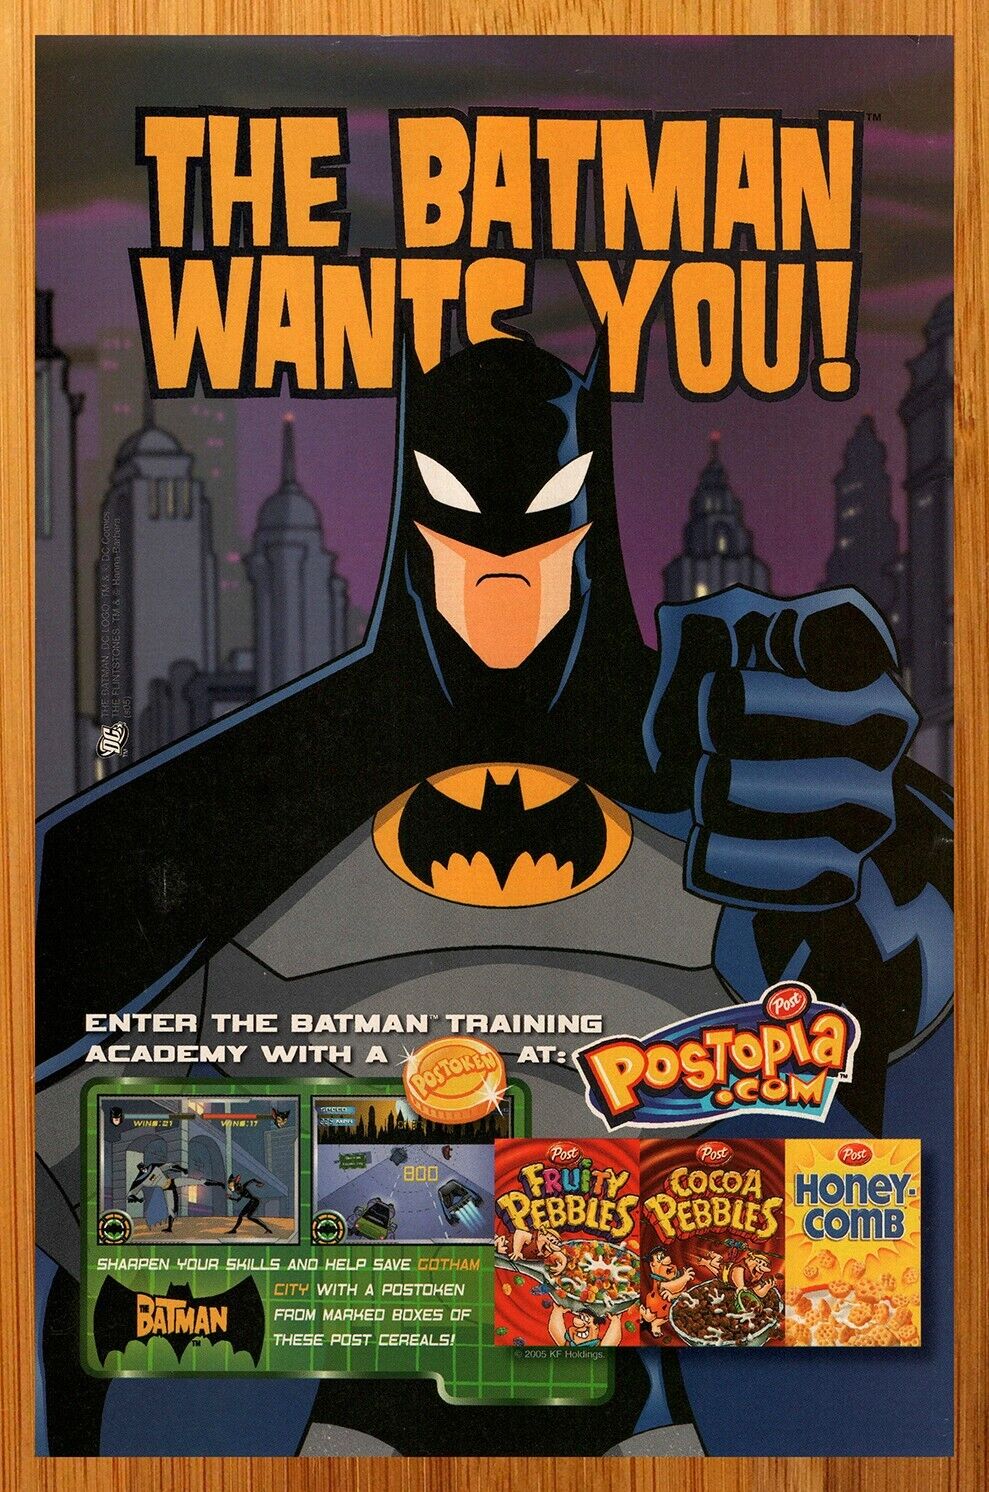 2005 Post Cereal/The Batman Print Ad/Poster Fruity Cocoa Pebbles Honeycomb Art